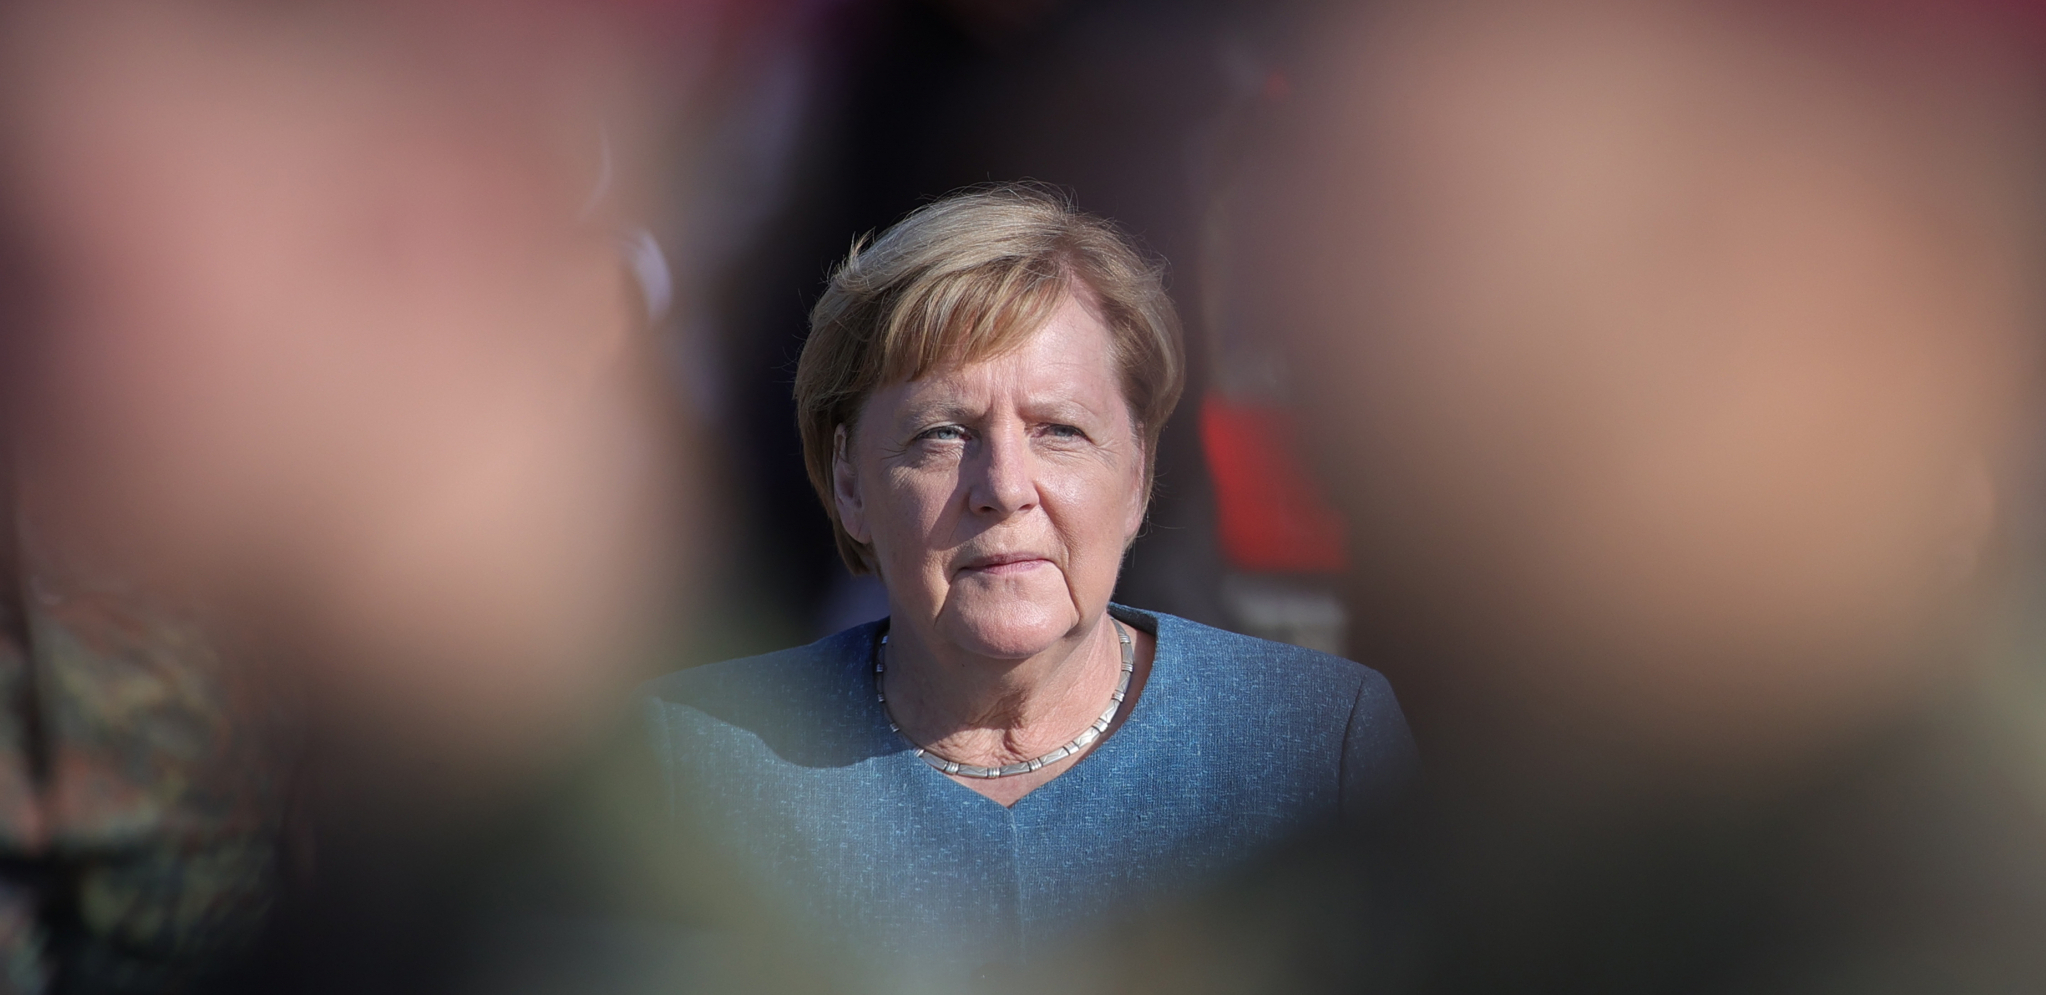 ODLAZI ZABRINUTA Merkel rekla šta joj leži na duši: To je nešto gde smo uvek ranjivi...